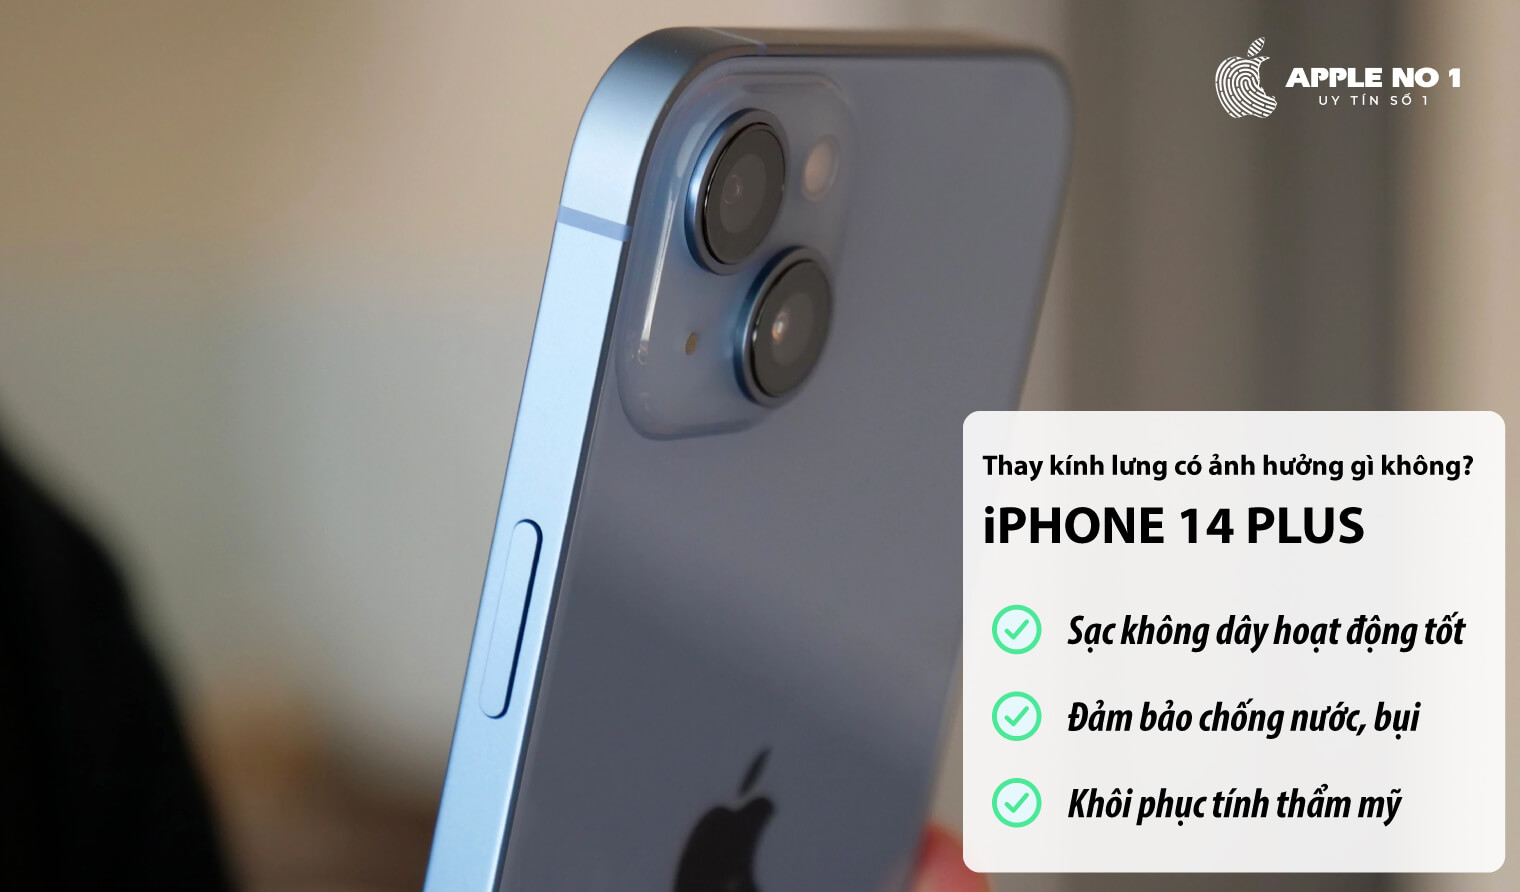 Thay kính lưng iPhone 14 Plus có ảnh hưởng gì không?